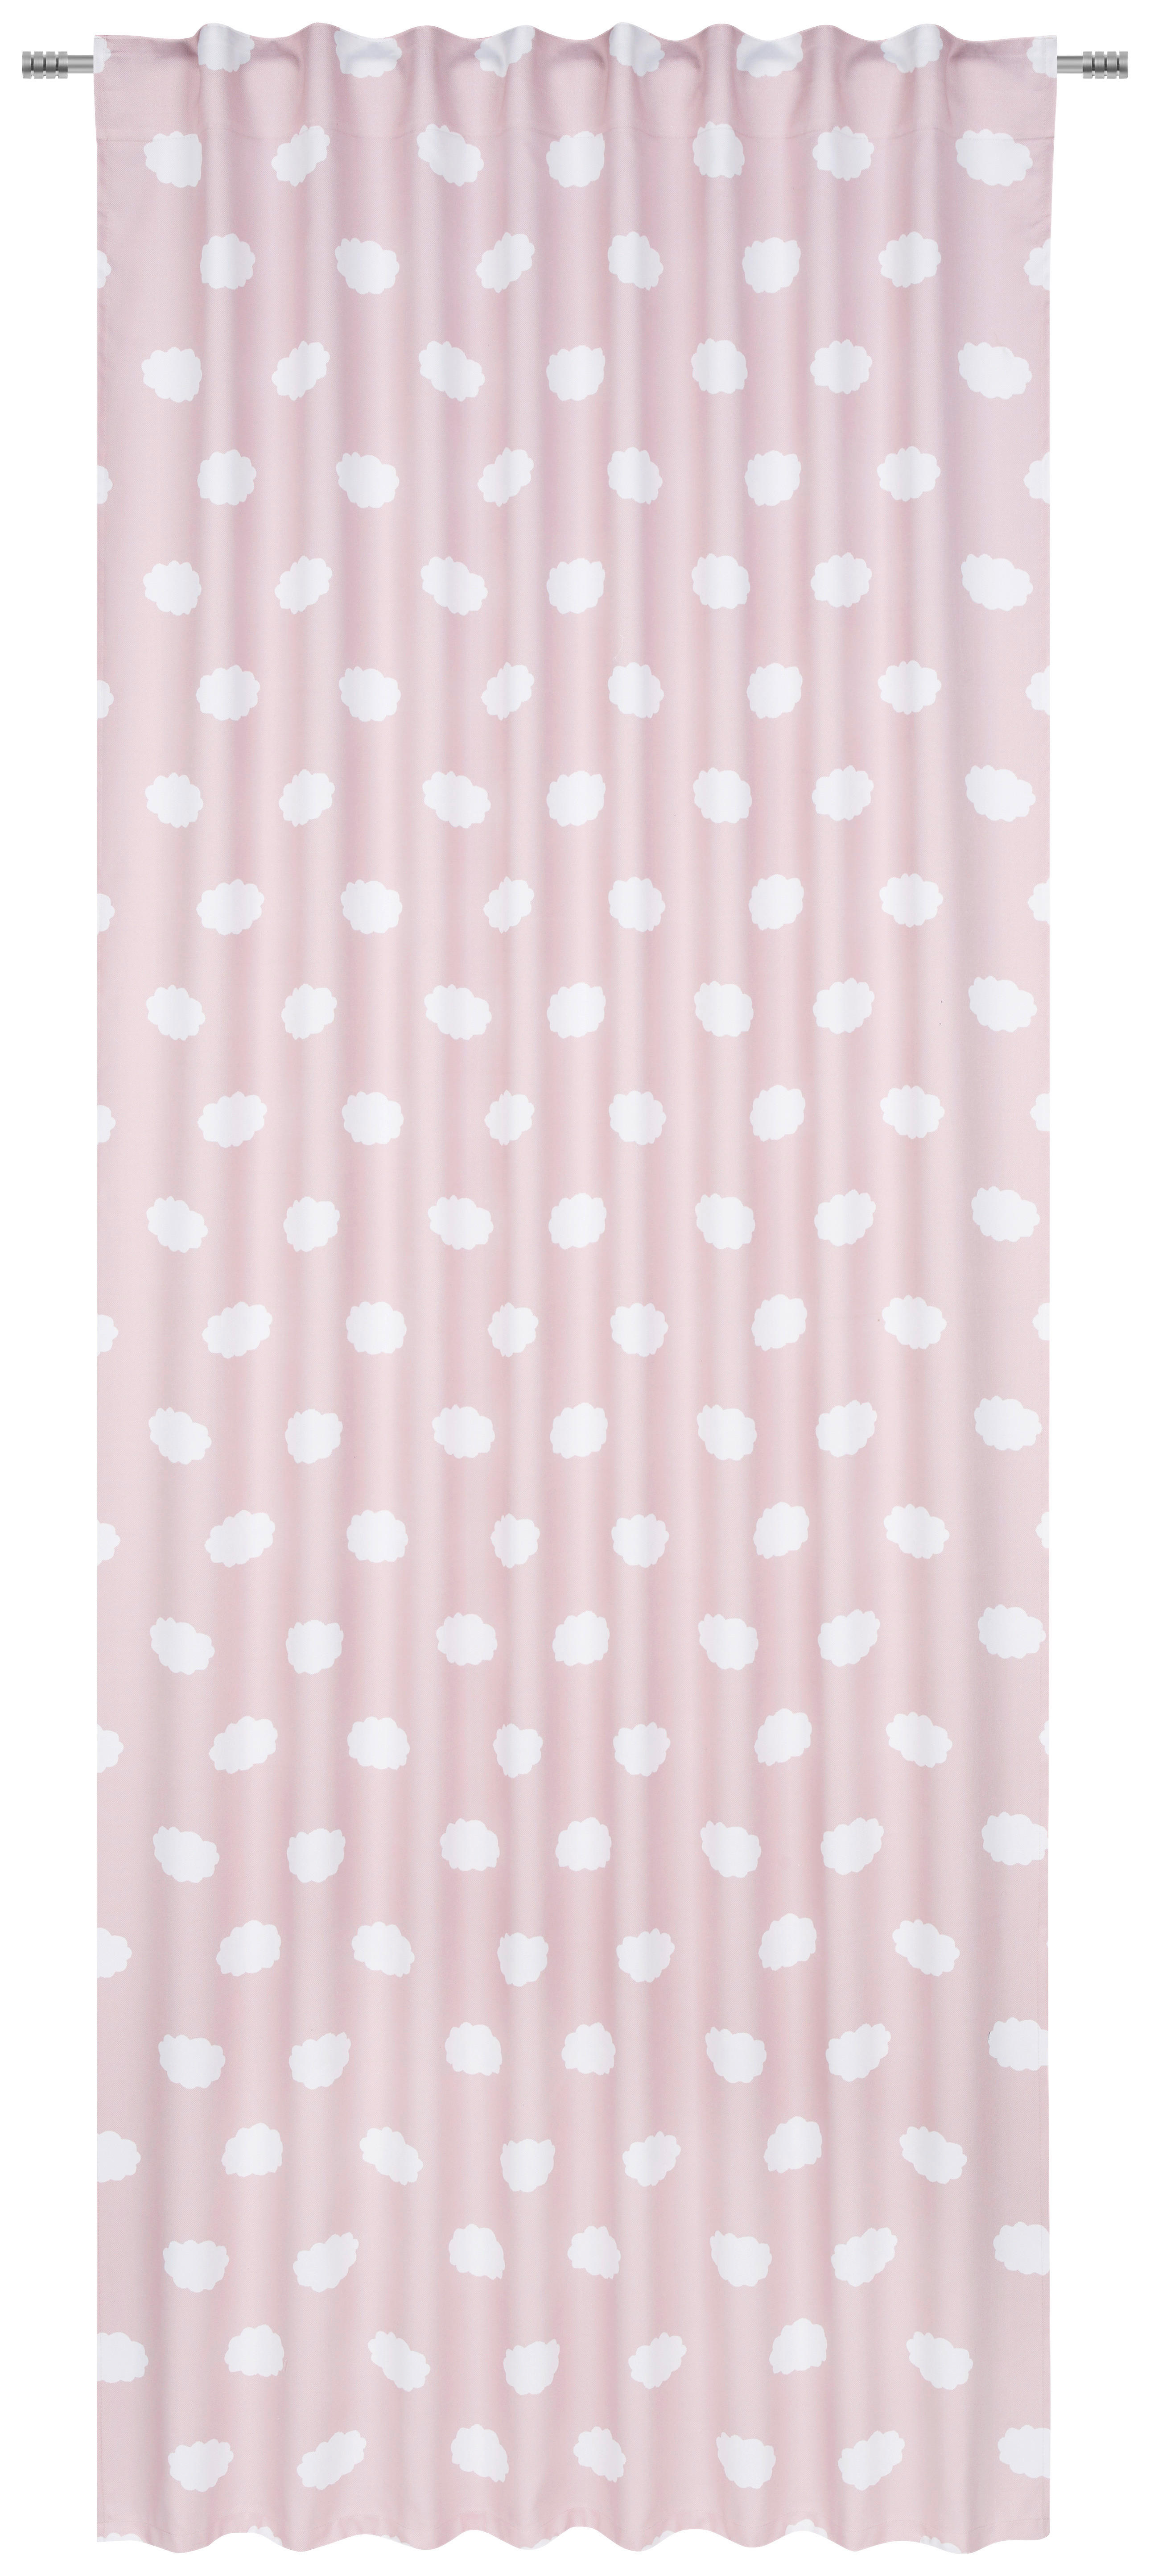 KINDERVORHANG blickdicht  135/245 cm  - Rosa, Design, Textil (135/245cm) - Ben'n'jen